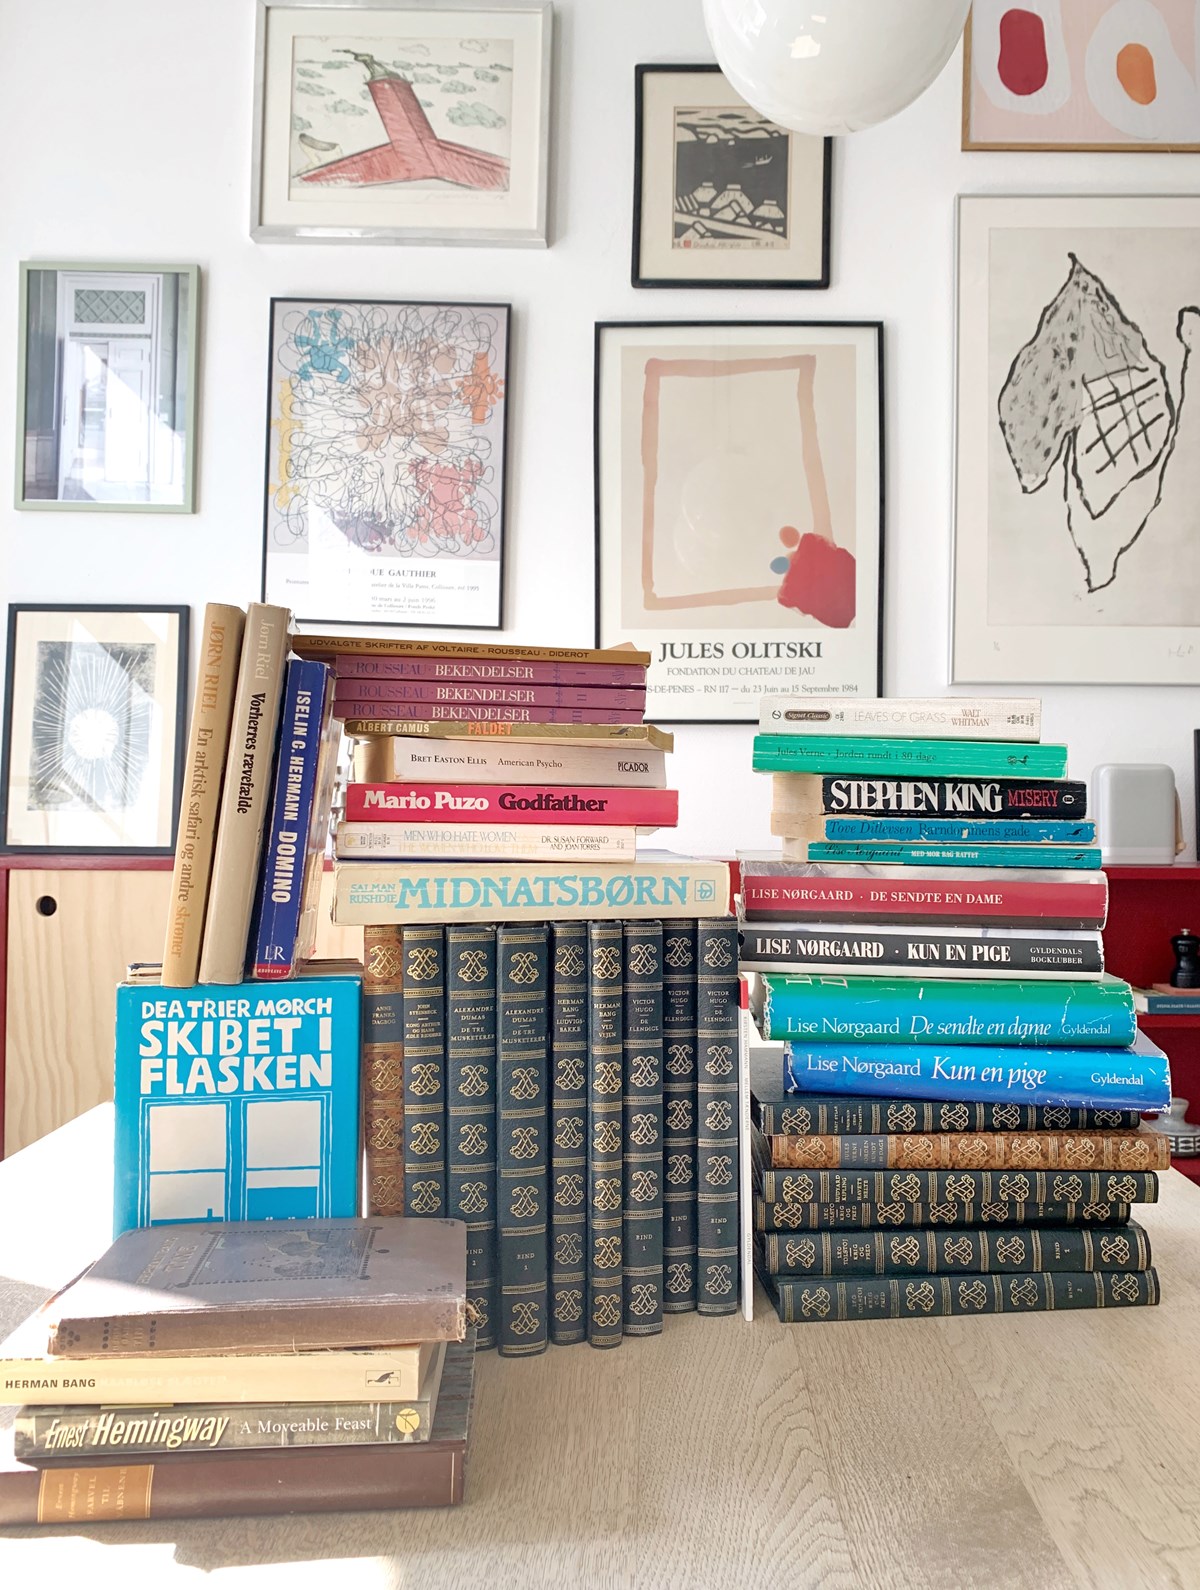 Her ses nogle af Frejas bøger, købt brugt. Hun gør sig sine fund på DBA, Lauritz, loppemarkeder, Instagram, genbrugsbutikker og Blocket